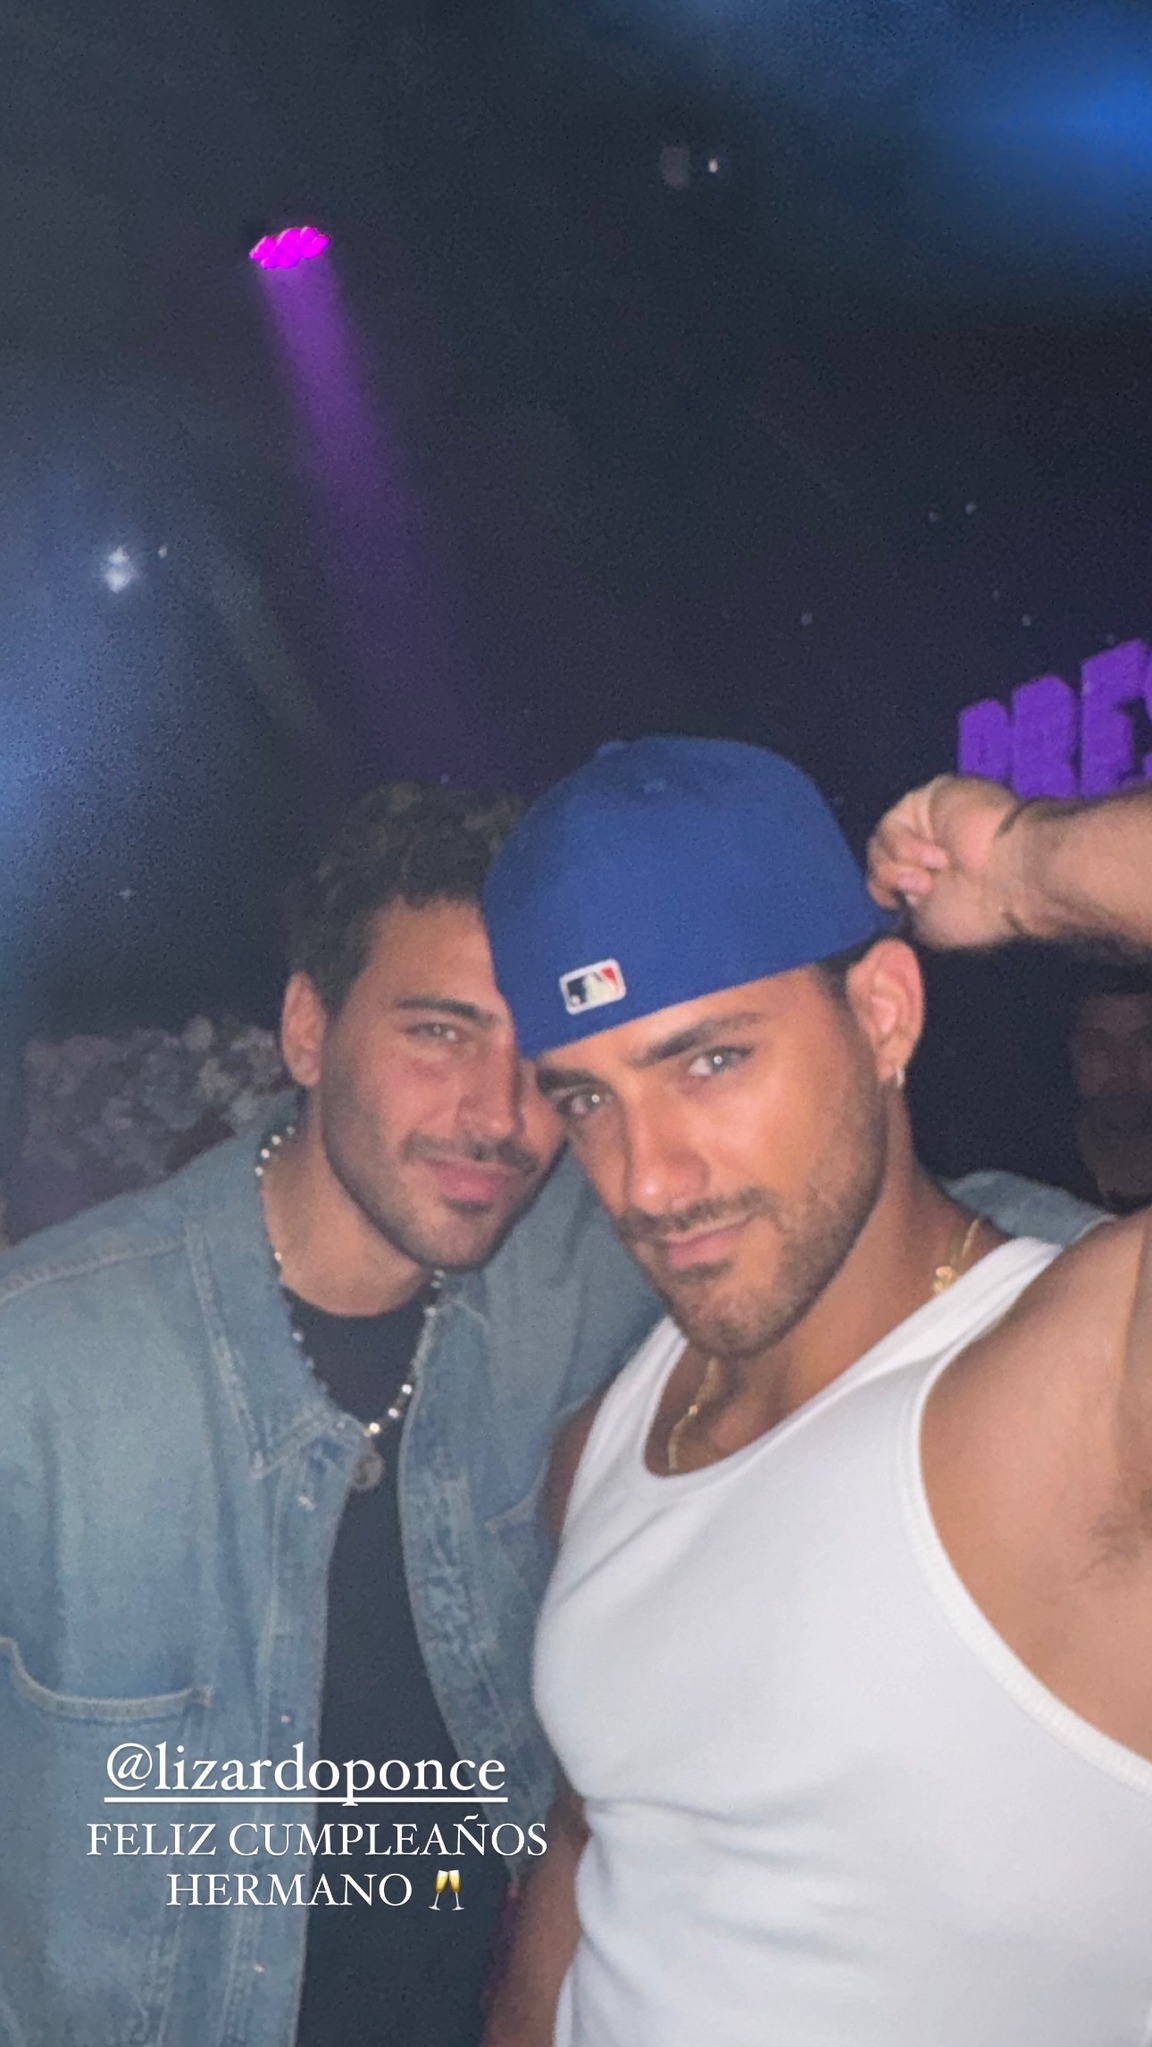 Austin Palao junto a Lizardo Ponce en la fiesta de cumpleaños del influencer argentino. Fuente: Instagram